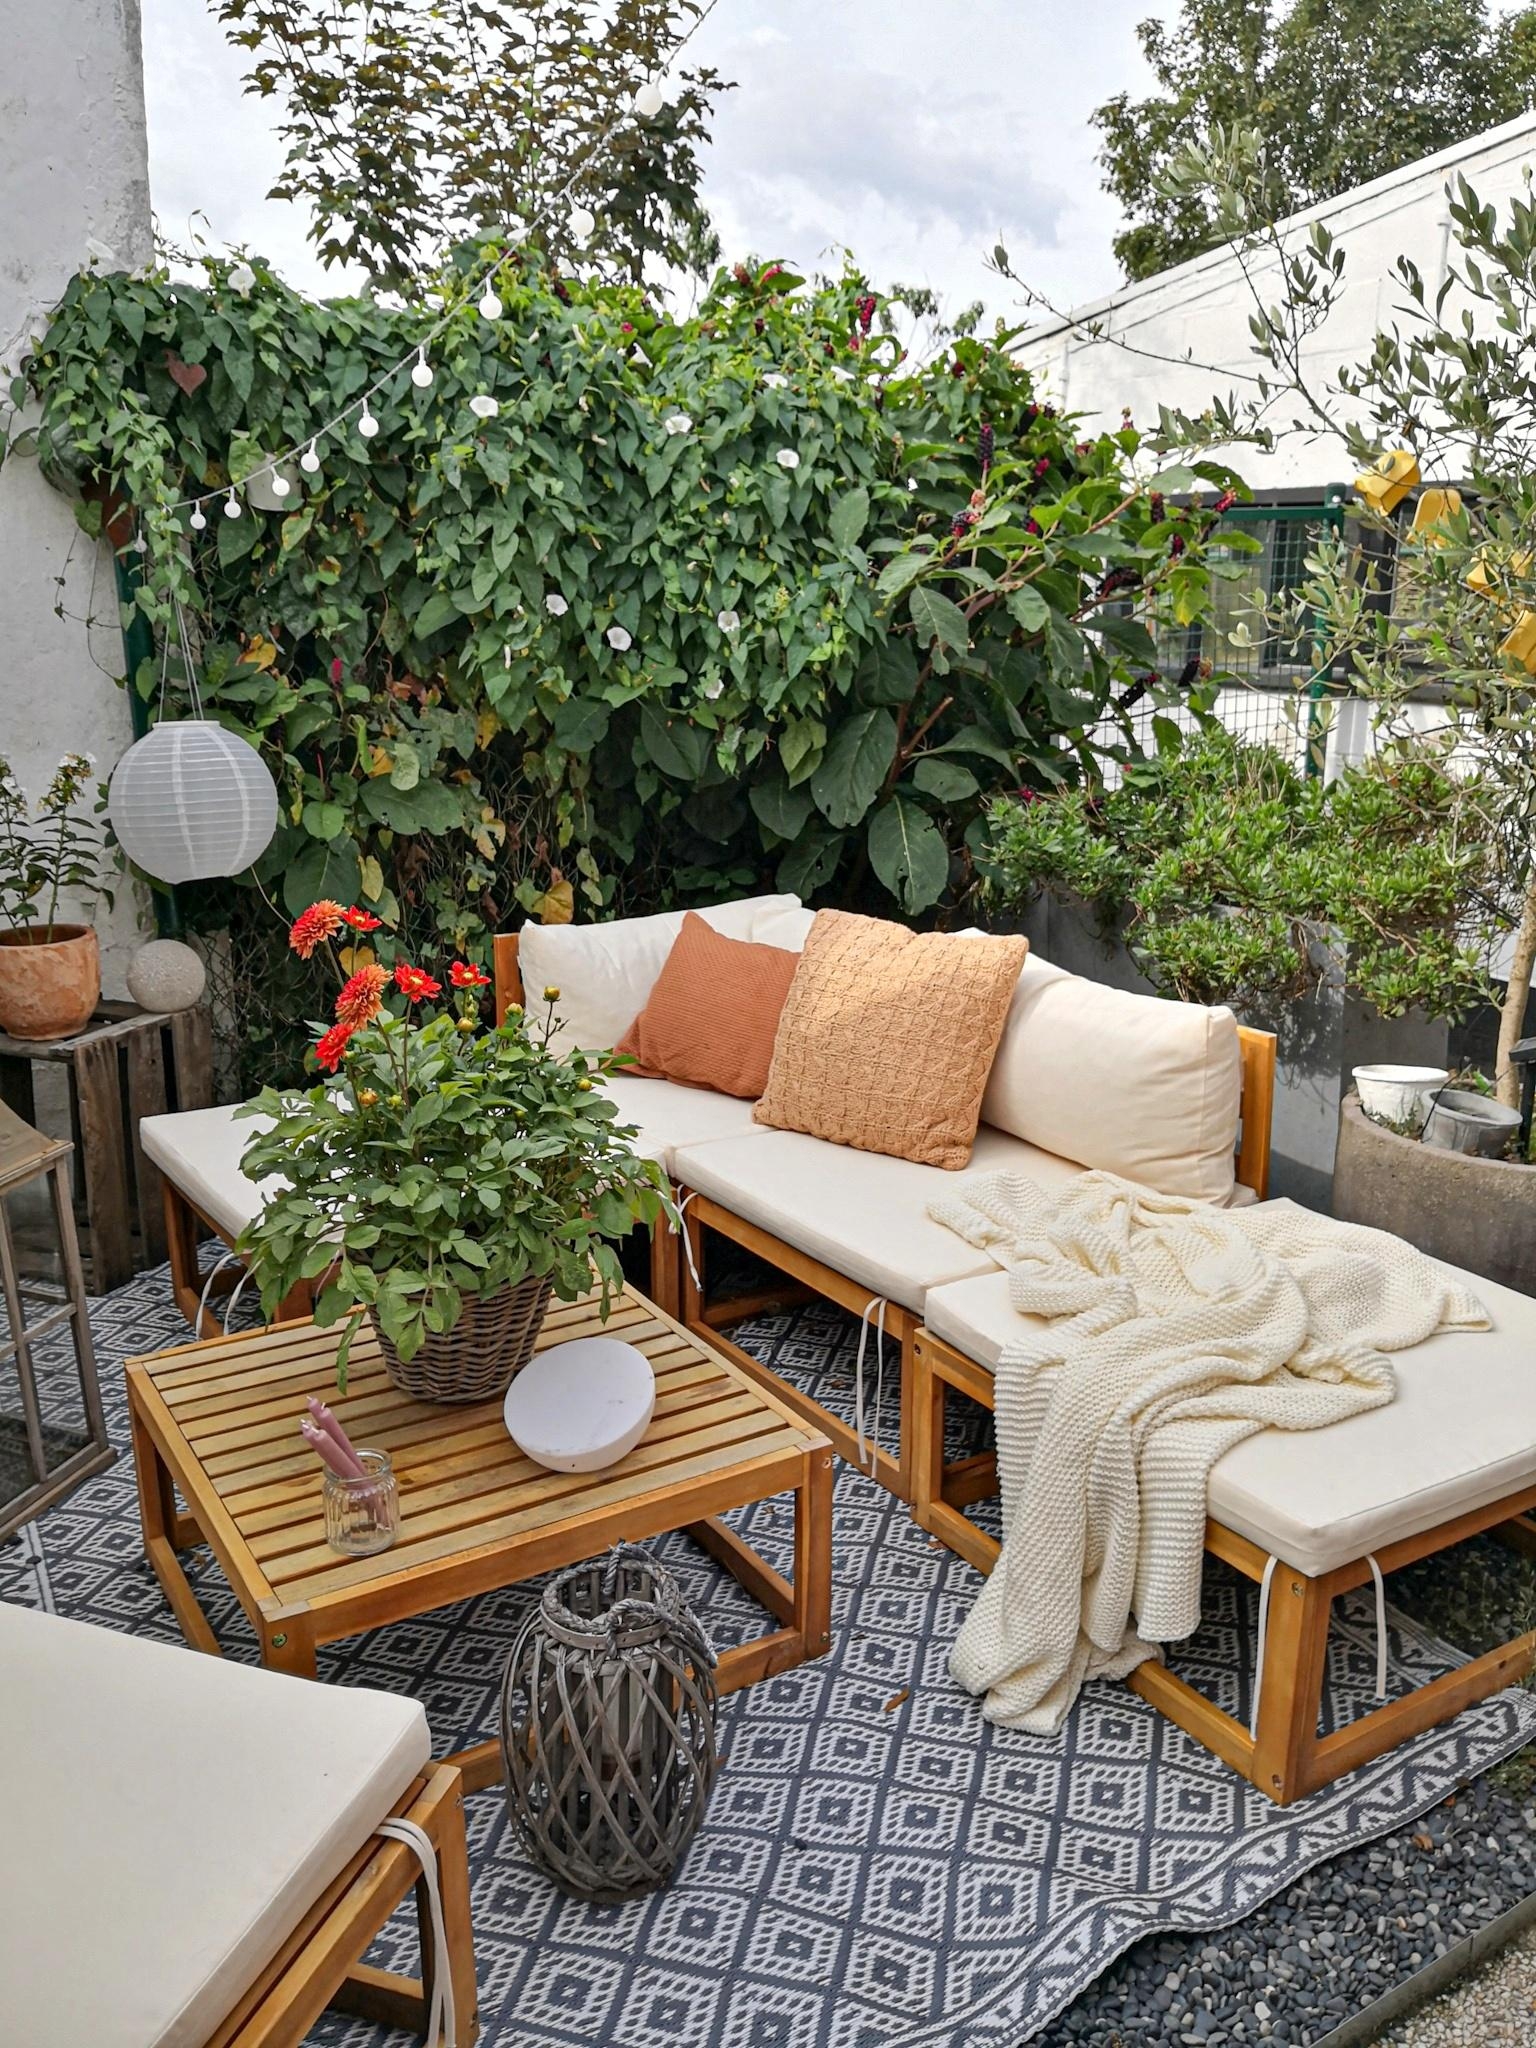 Guten Morgen! #terrasse #innenhof #garten #gartenmöbel #Loungemöbel #hygge #gemütlich #hinterhof #holzmöbel #lampions